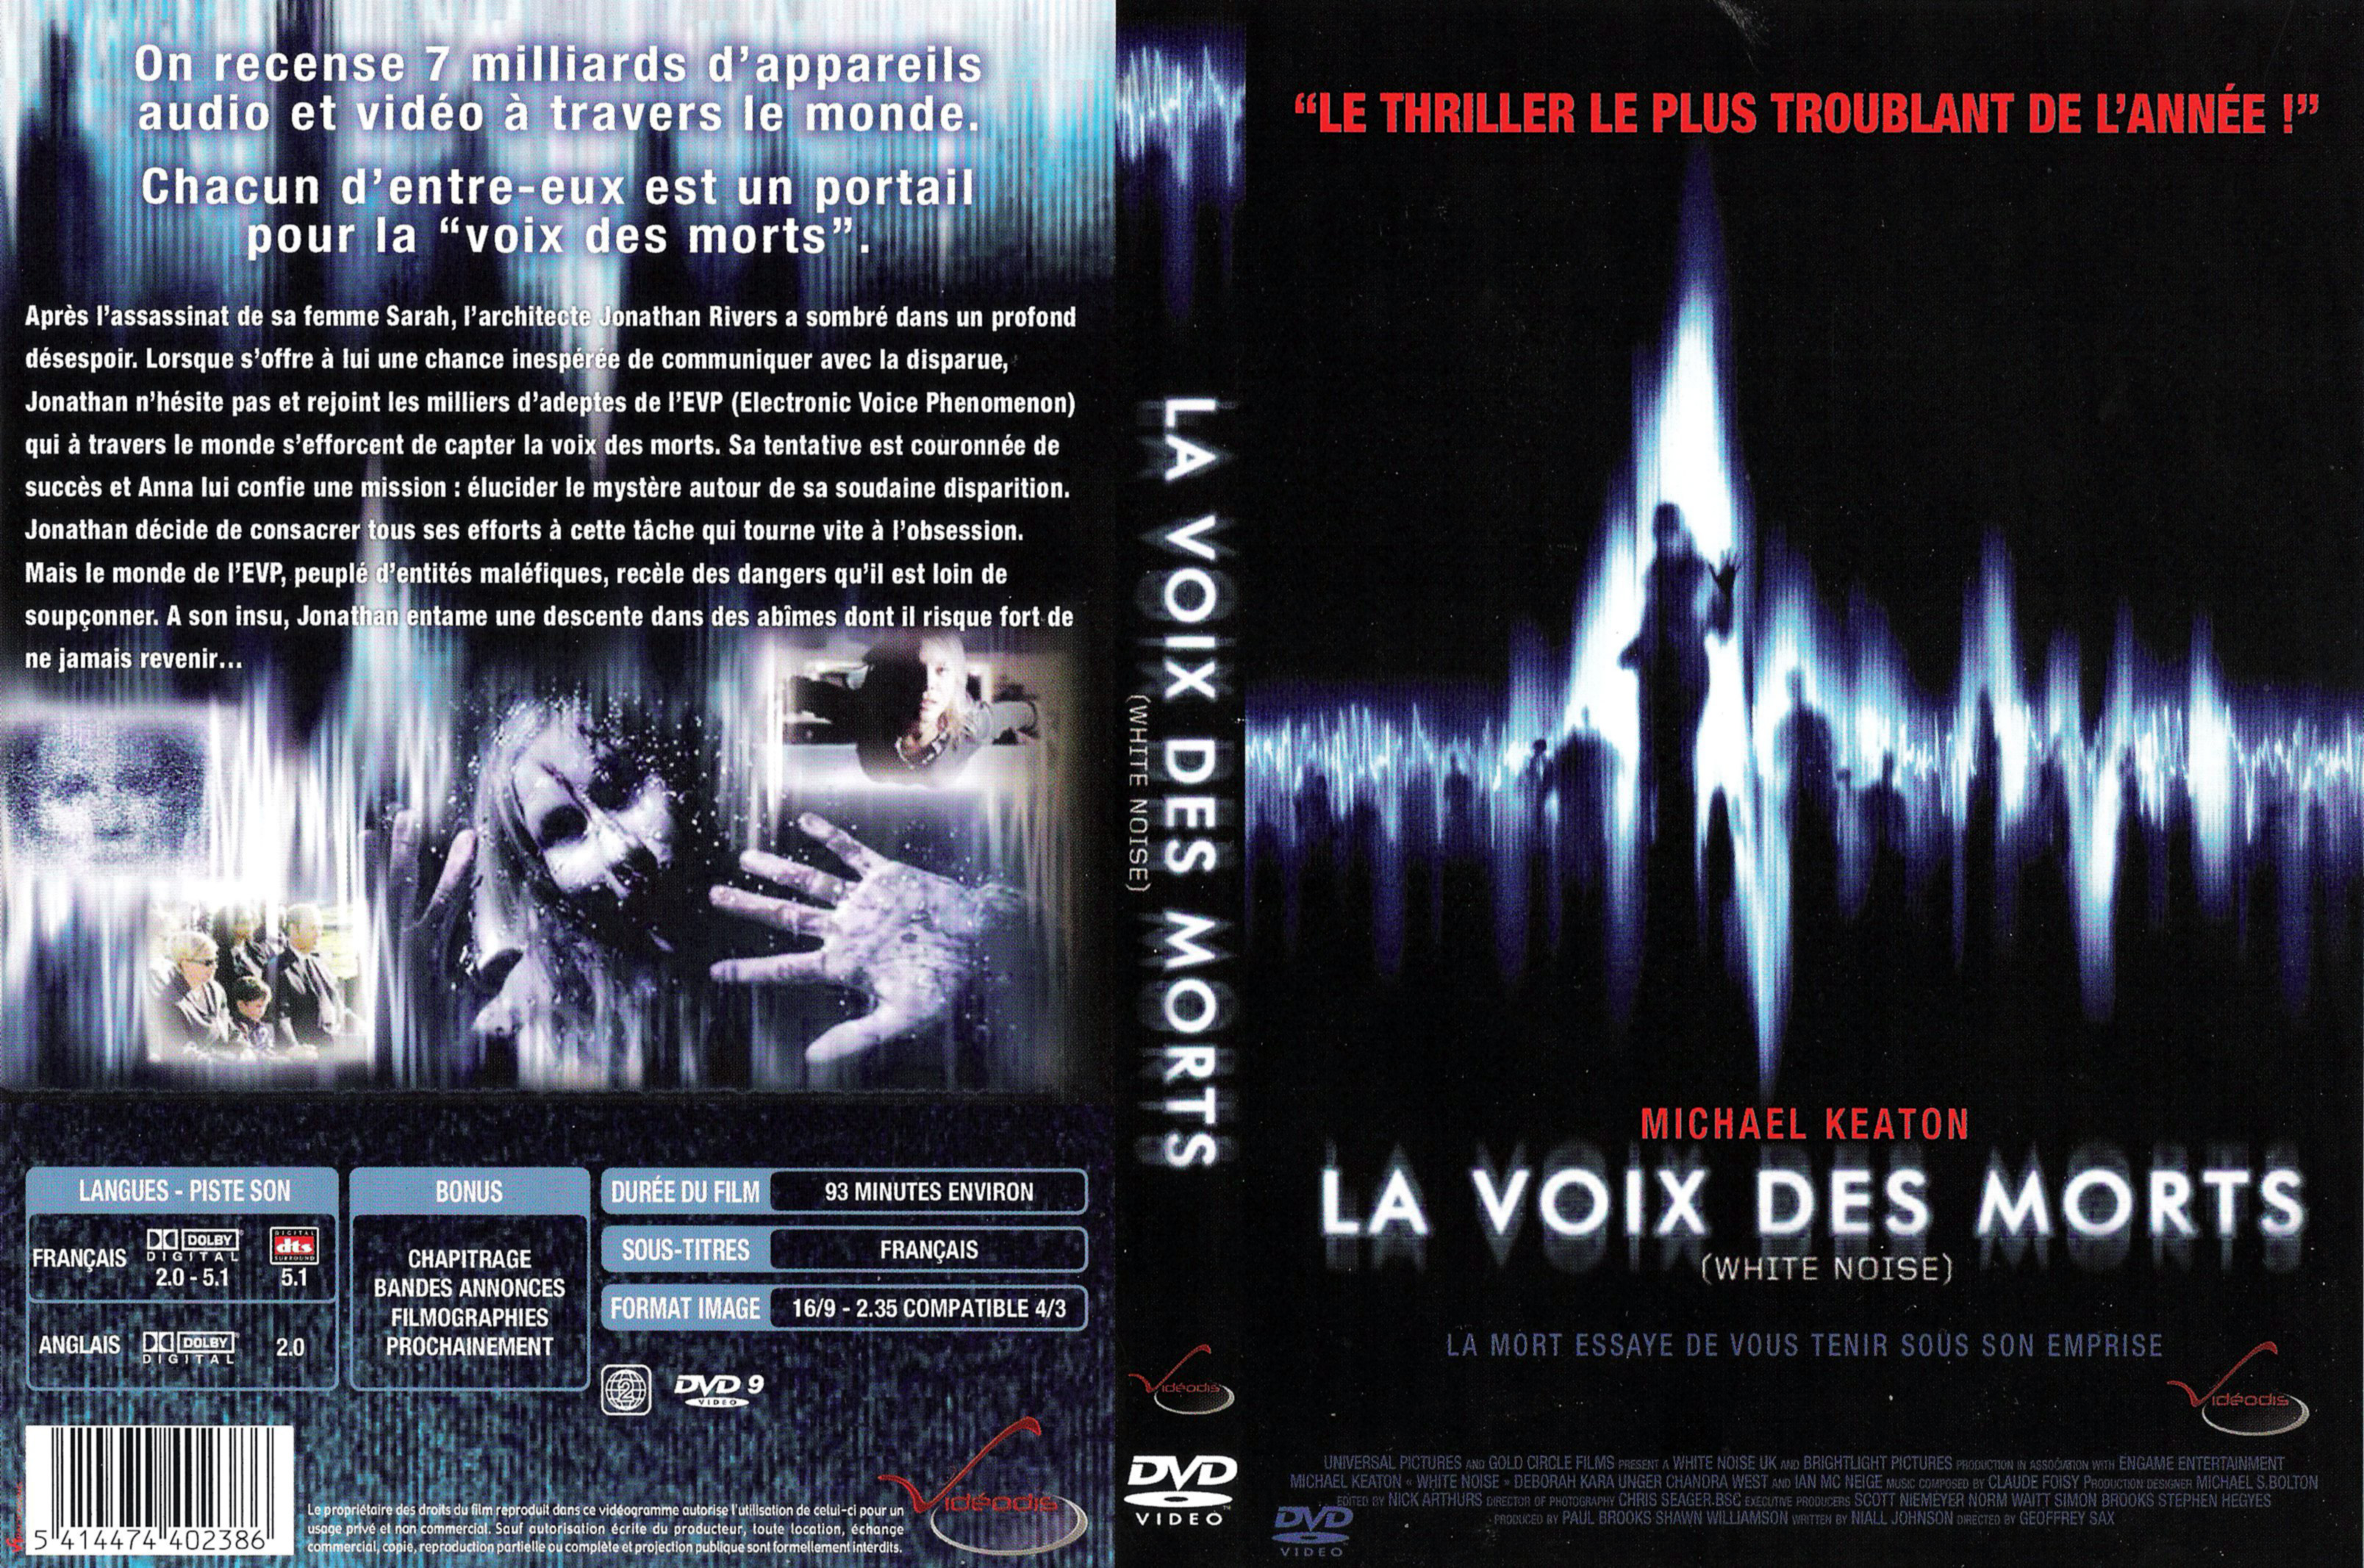 Jaquette DVD La voix des morts v2